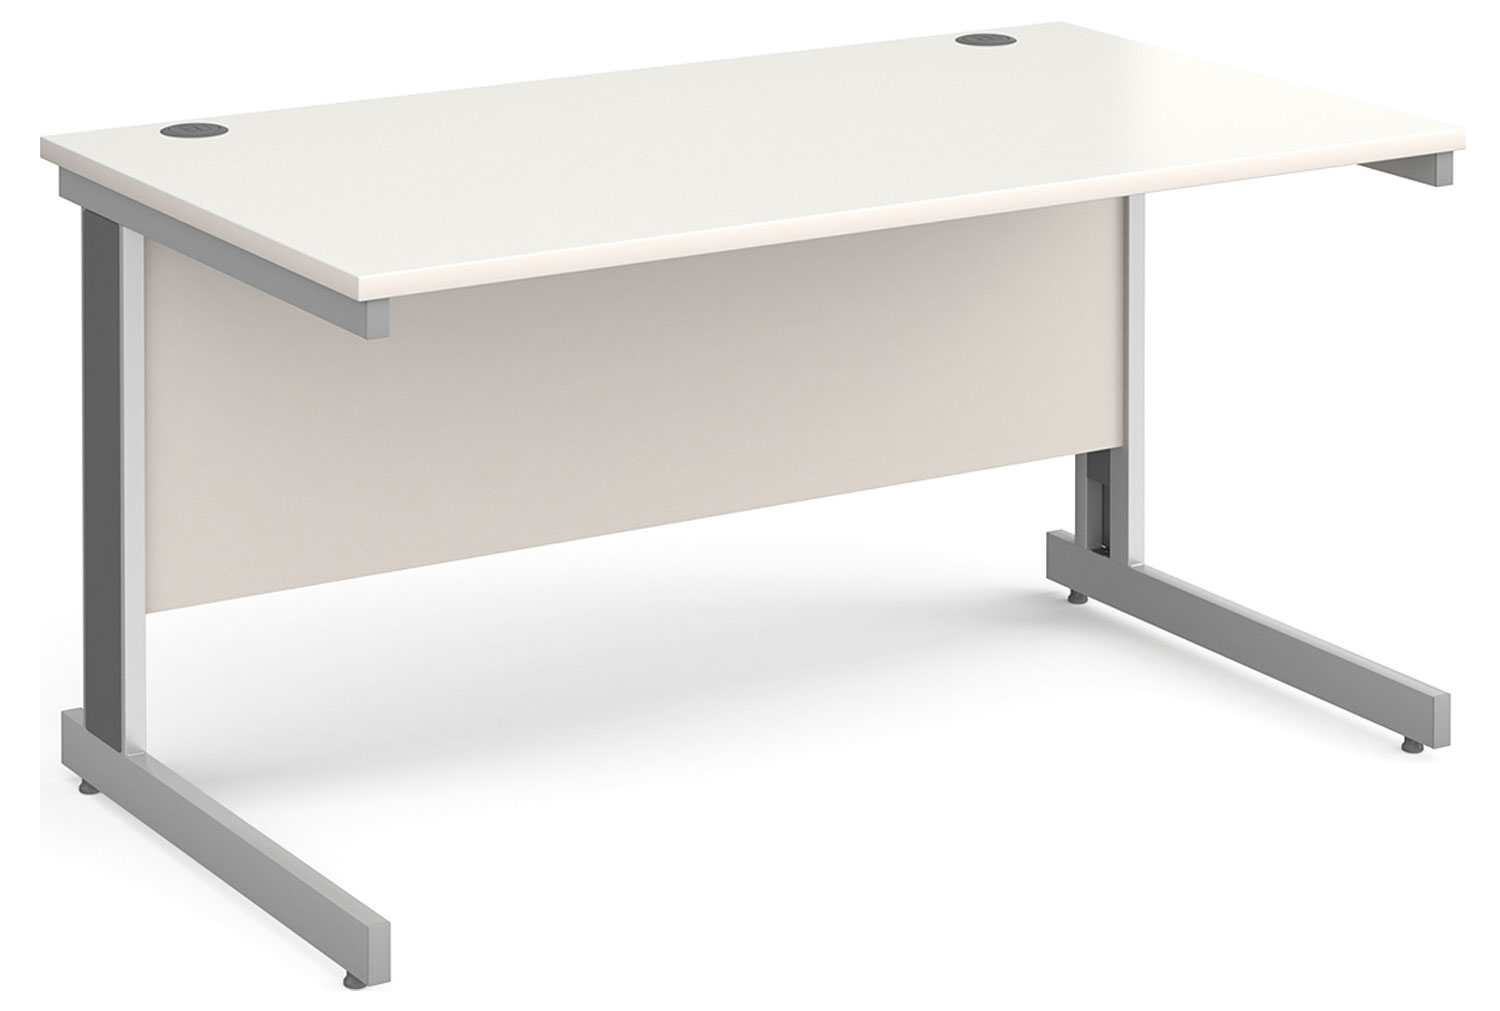 All White Deluxe Rectangular Office Desk, 140wx80dx73h (cm), Fully Installed